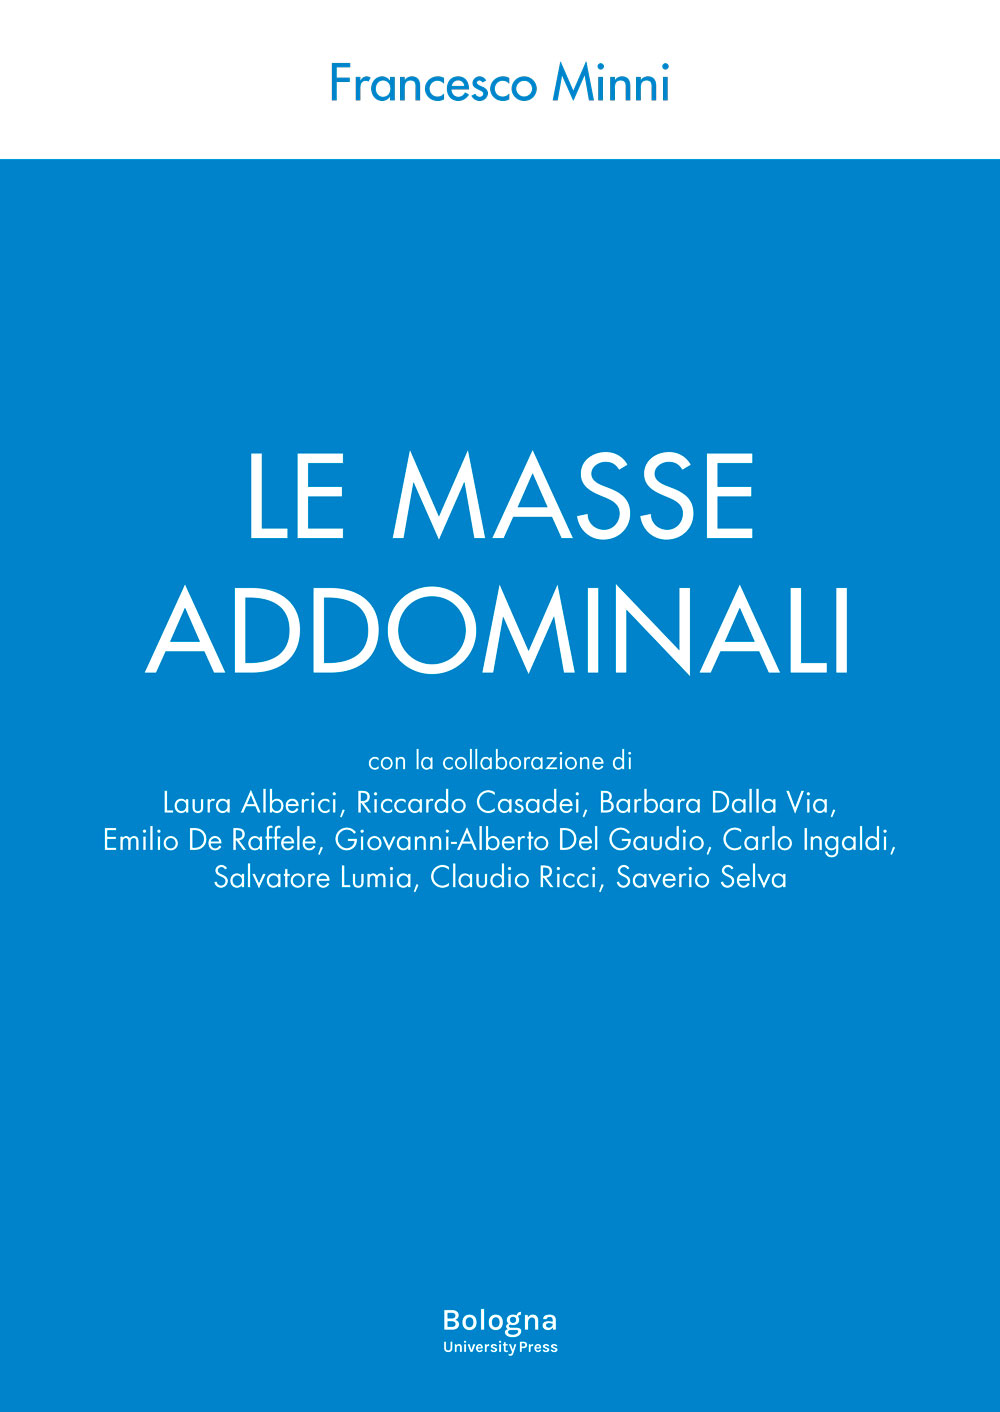 Le masse addominali - Bologna University Press